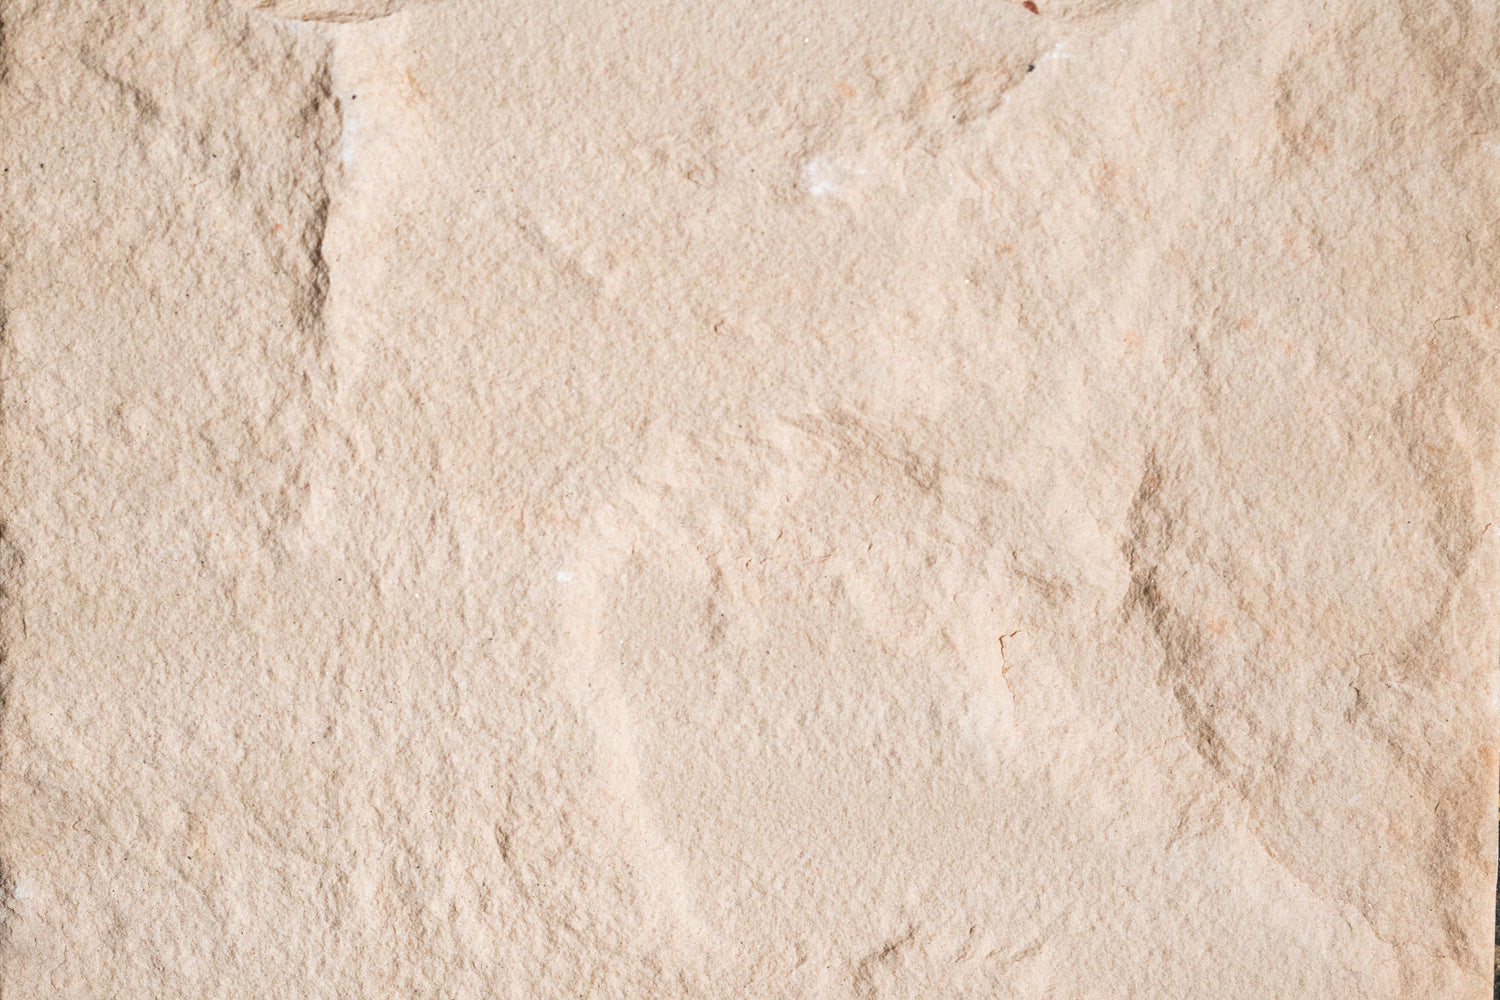 Full Tile Sample - Peach Blossom Sandstone Tile - 16" x 16" x 1/2" Natural Cleft Face, Gauged Back